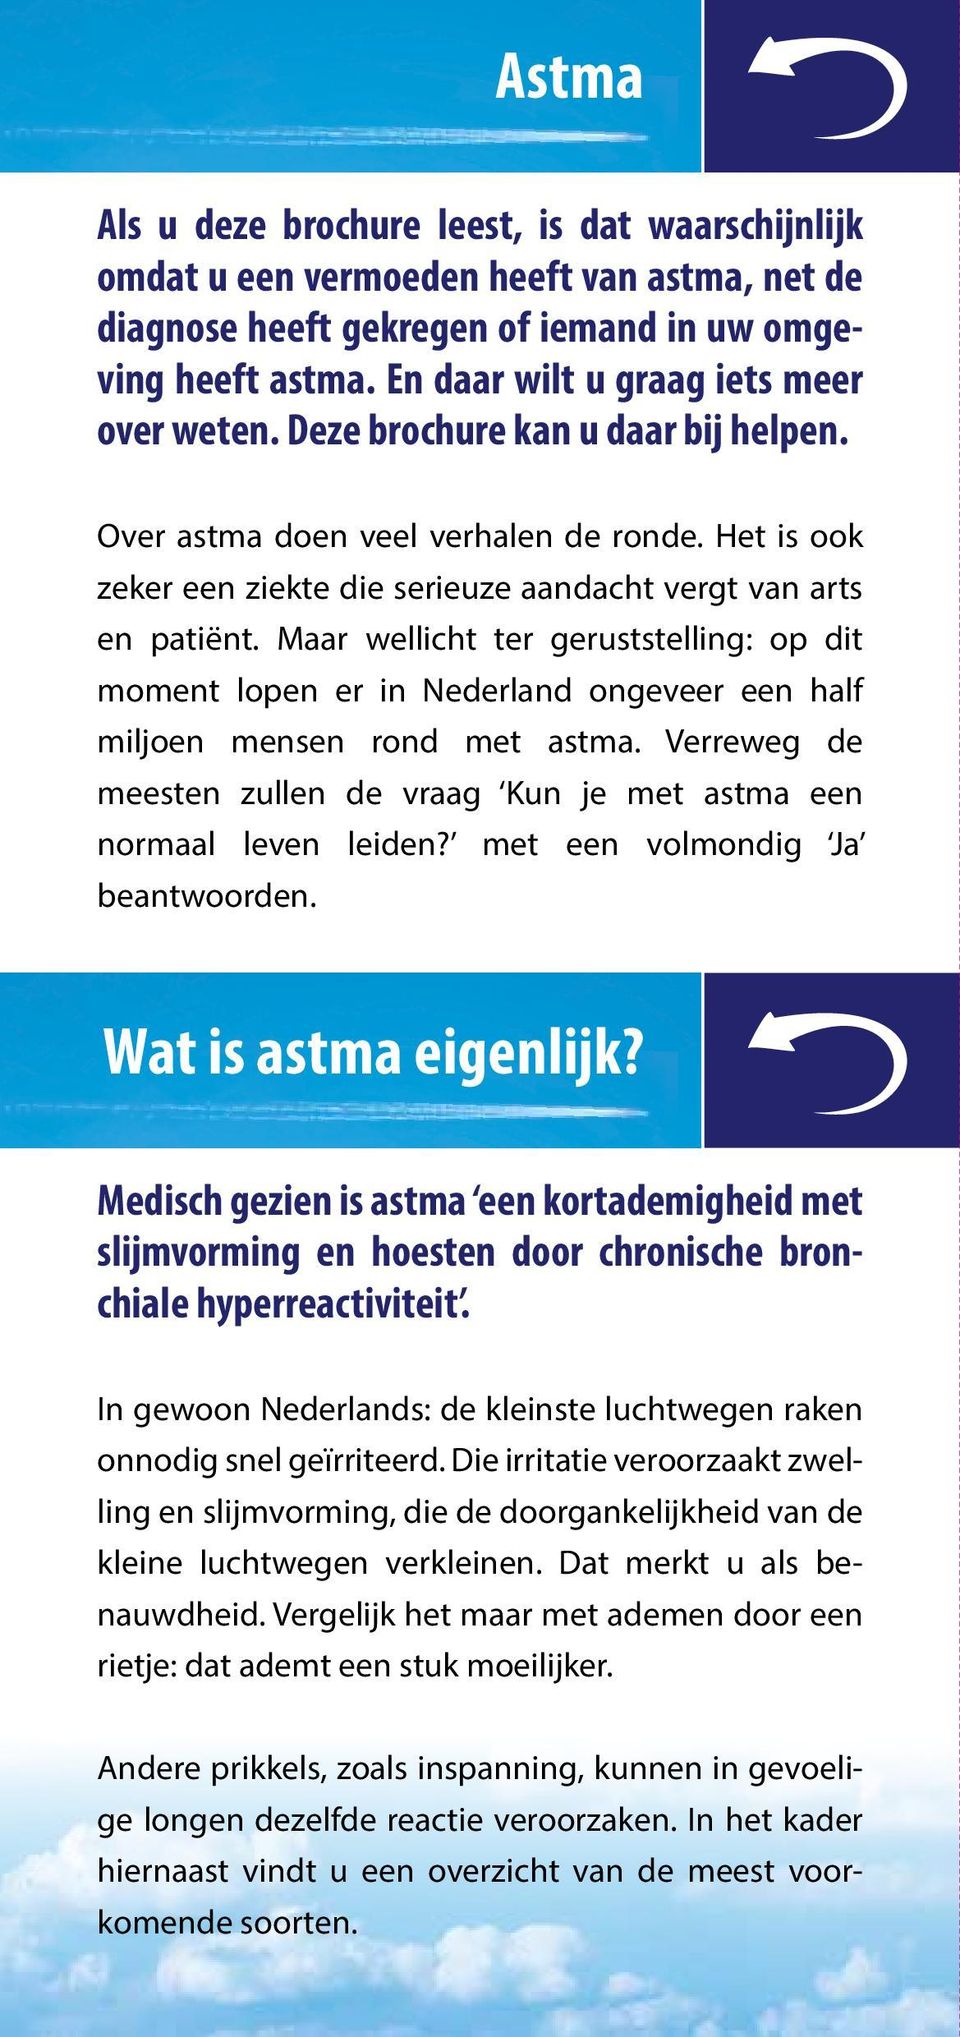 Maar wellicht ter geruststelling: op dit moment lopen er in Nederland ongeveer een half miljoen mensen rond met astma. Verreweg de meesten zullen de vraag Kun je met astma een normaal leven leiden?